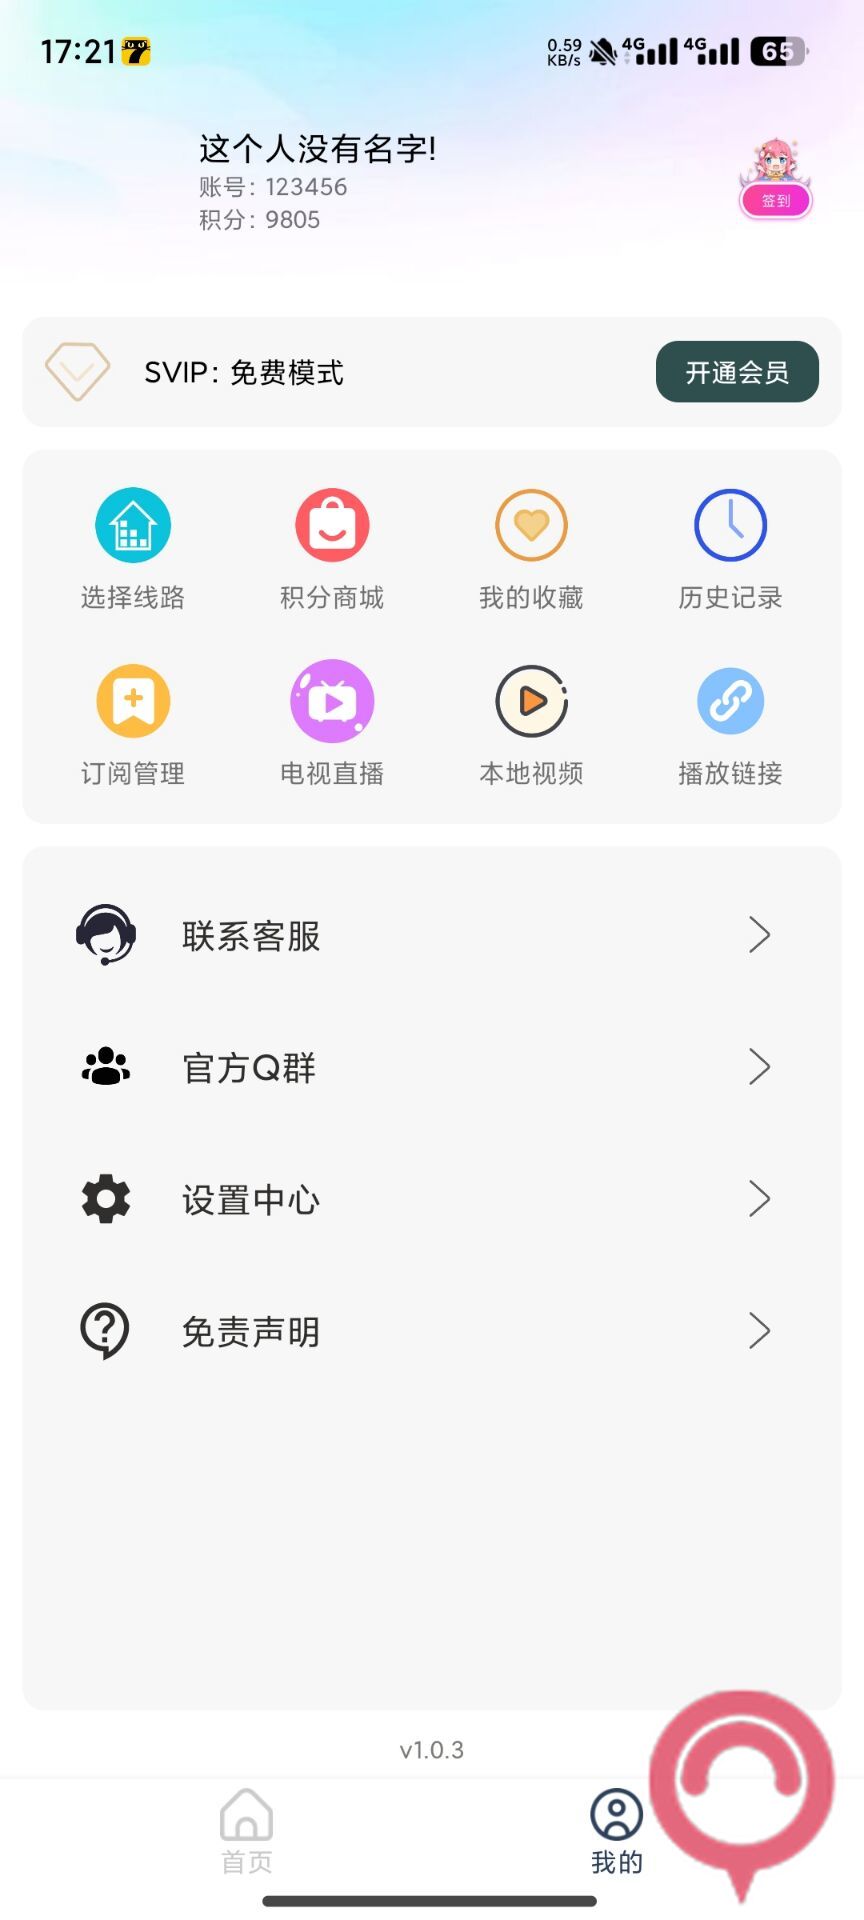 茶茶TVBOX手机版完美对接苹果cms最新版tvbox二开前后端源码